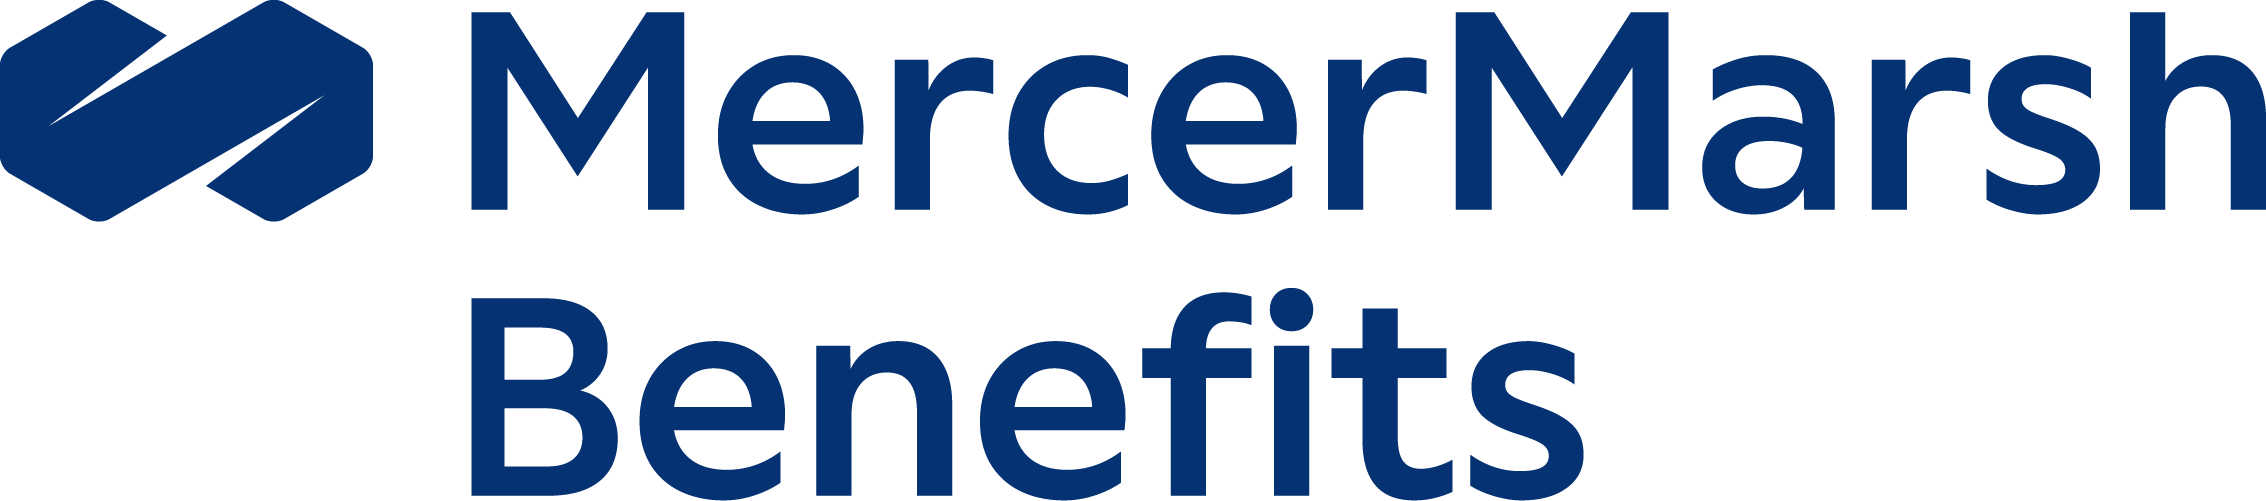 MercerMarsh-Benefits-blue-cmyk